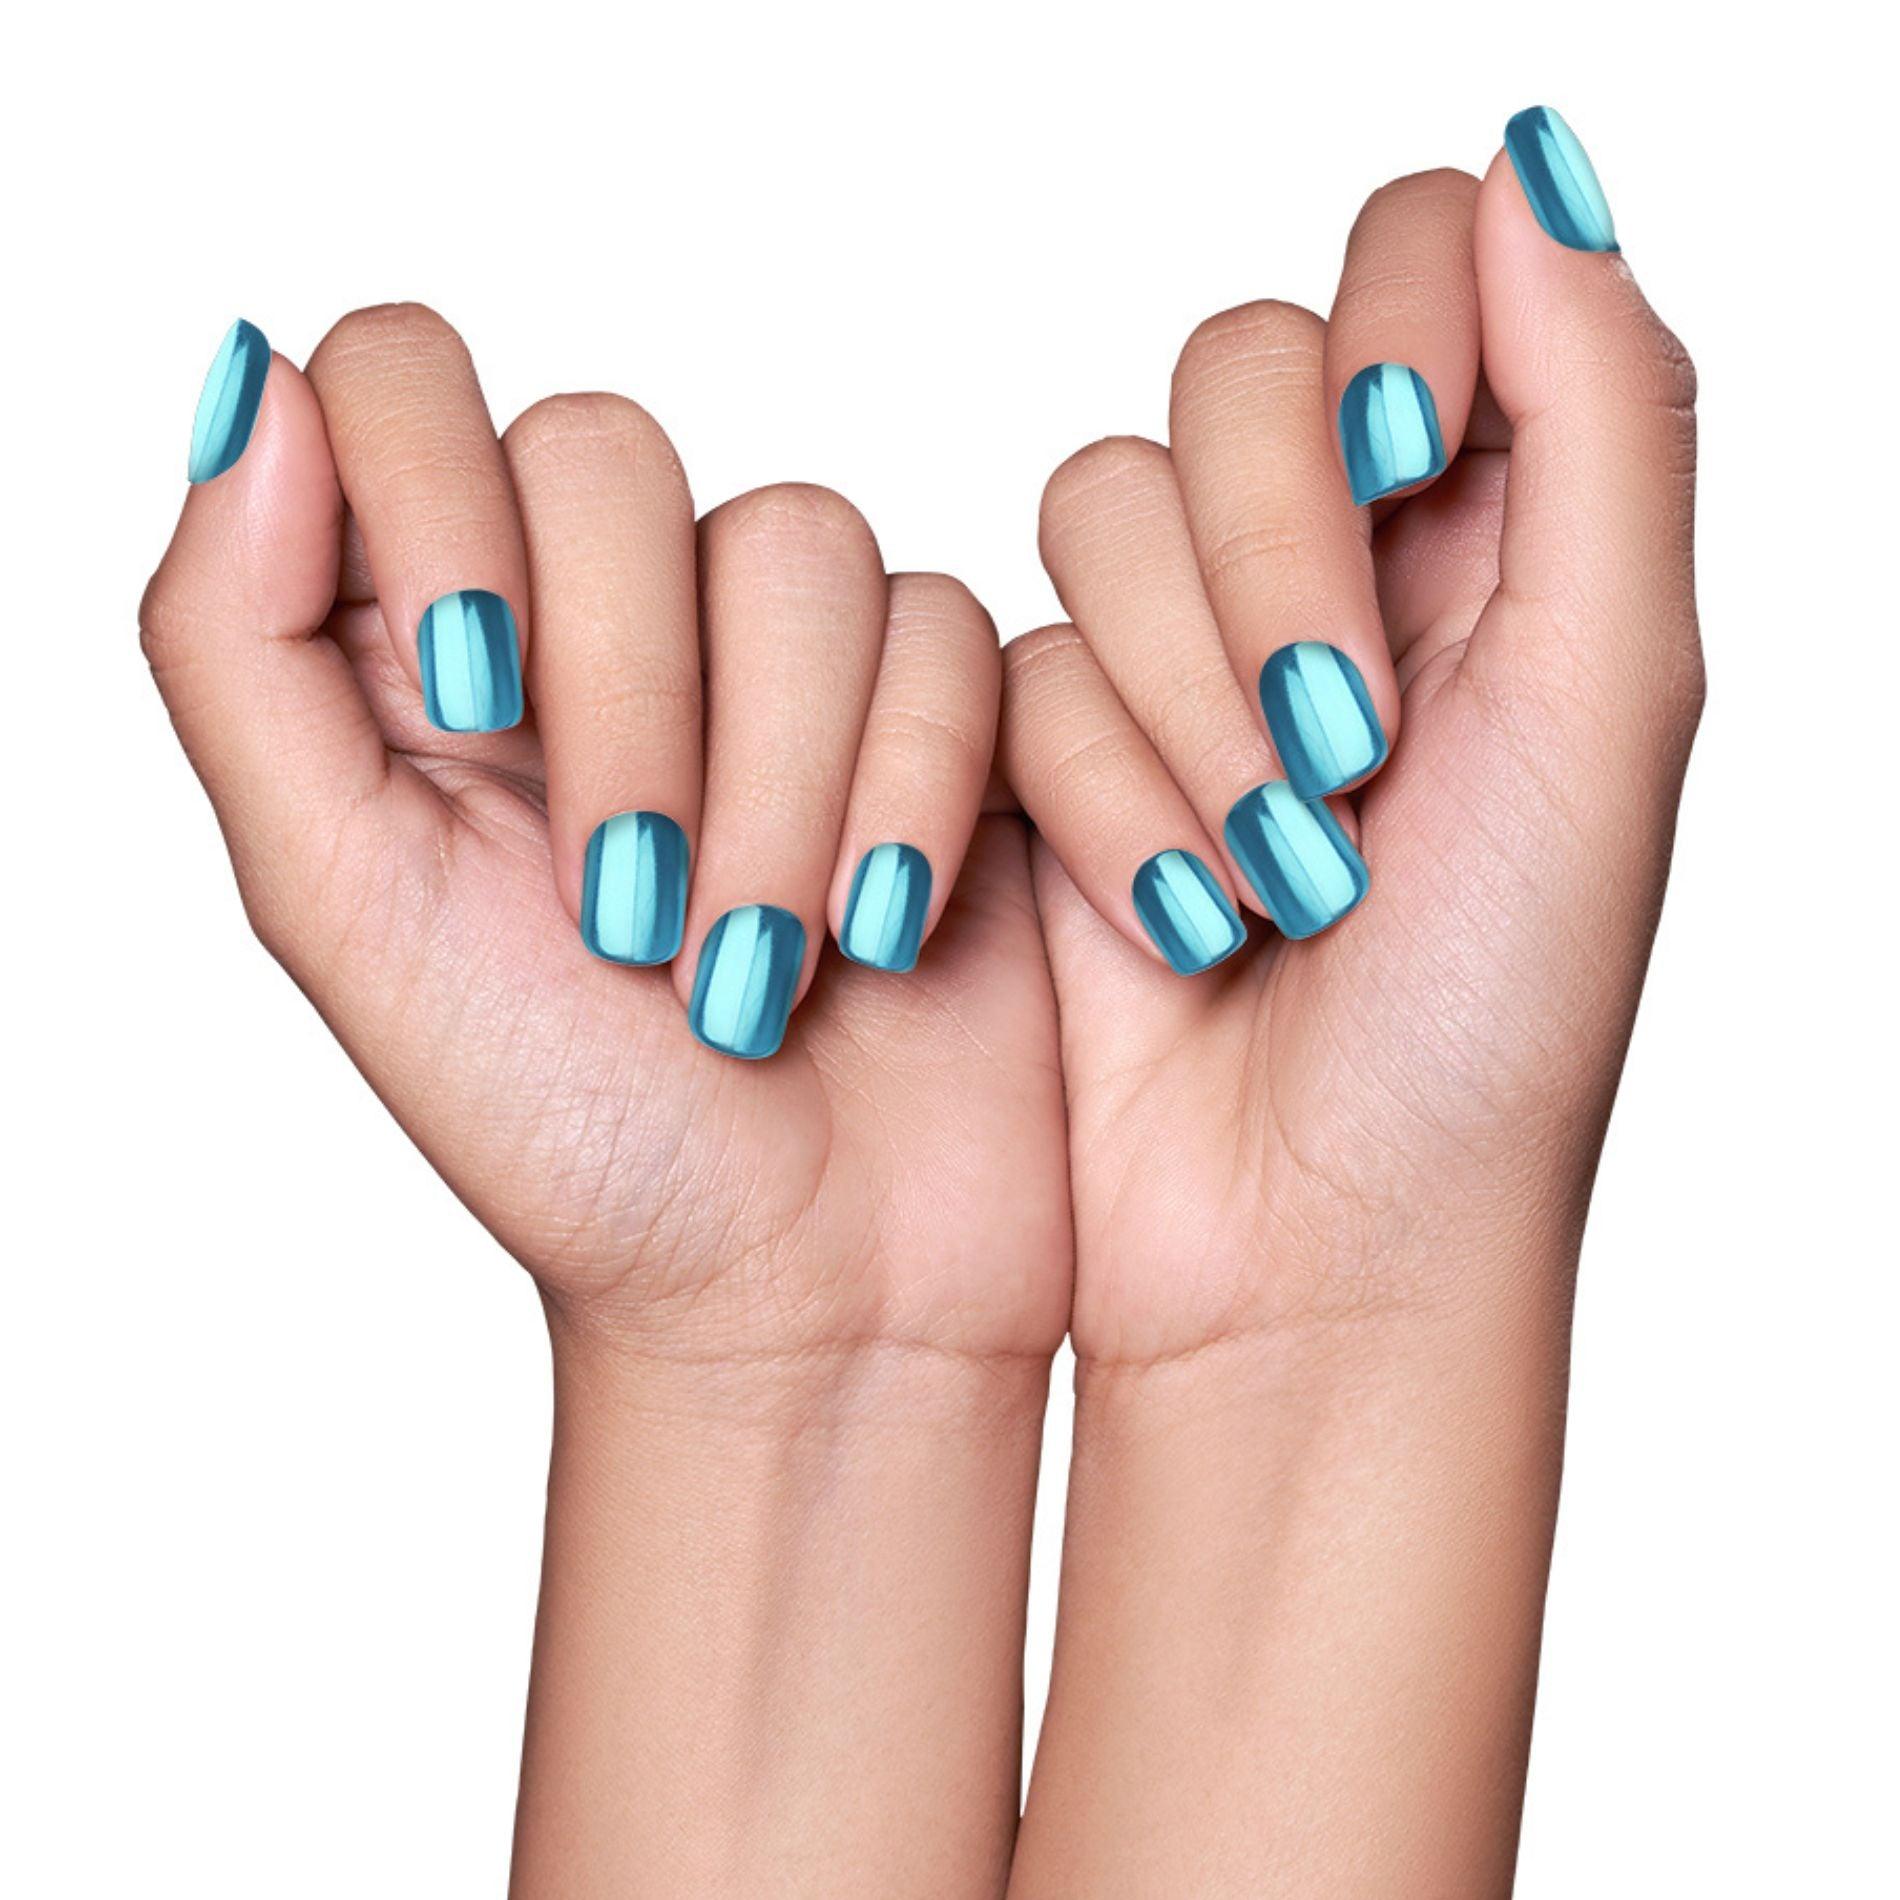 At-home manicure tips: Don't shake nail polish